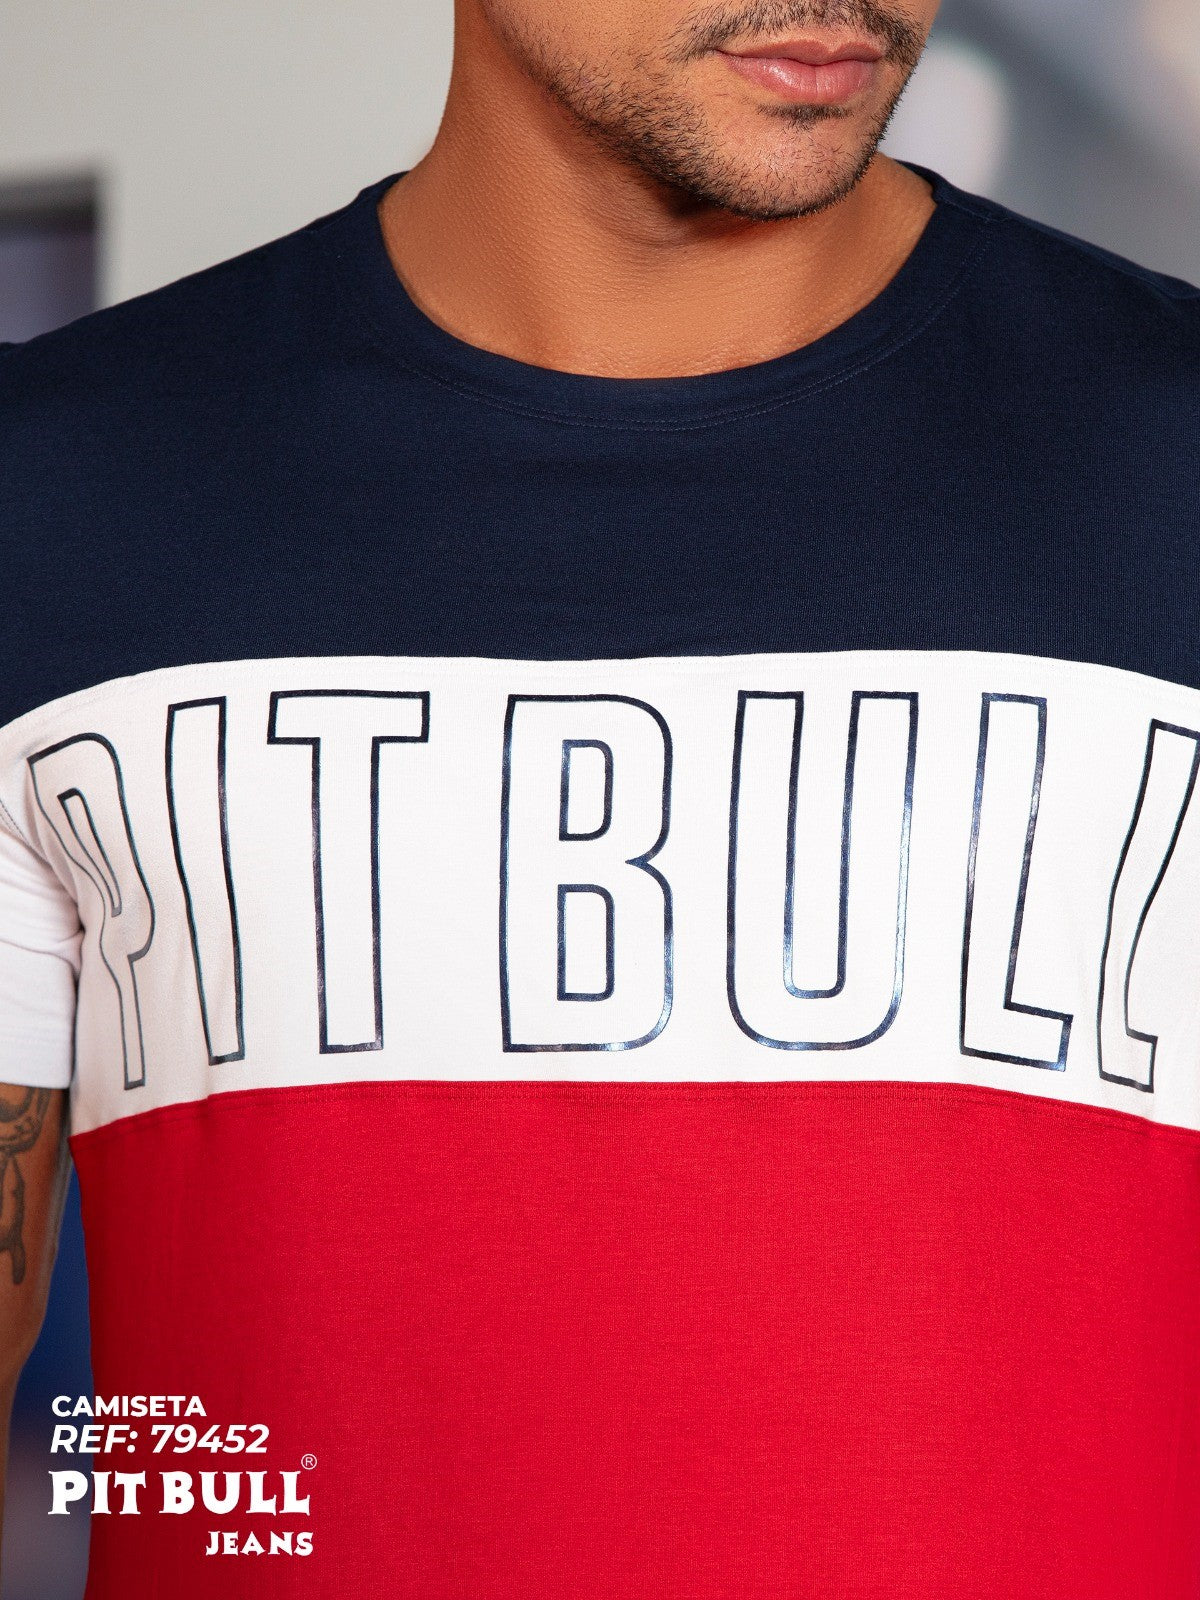 Pitbull Men's T-Shirt 79452